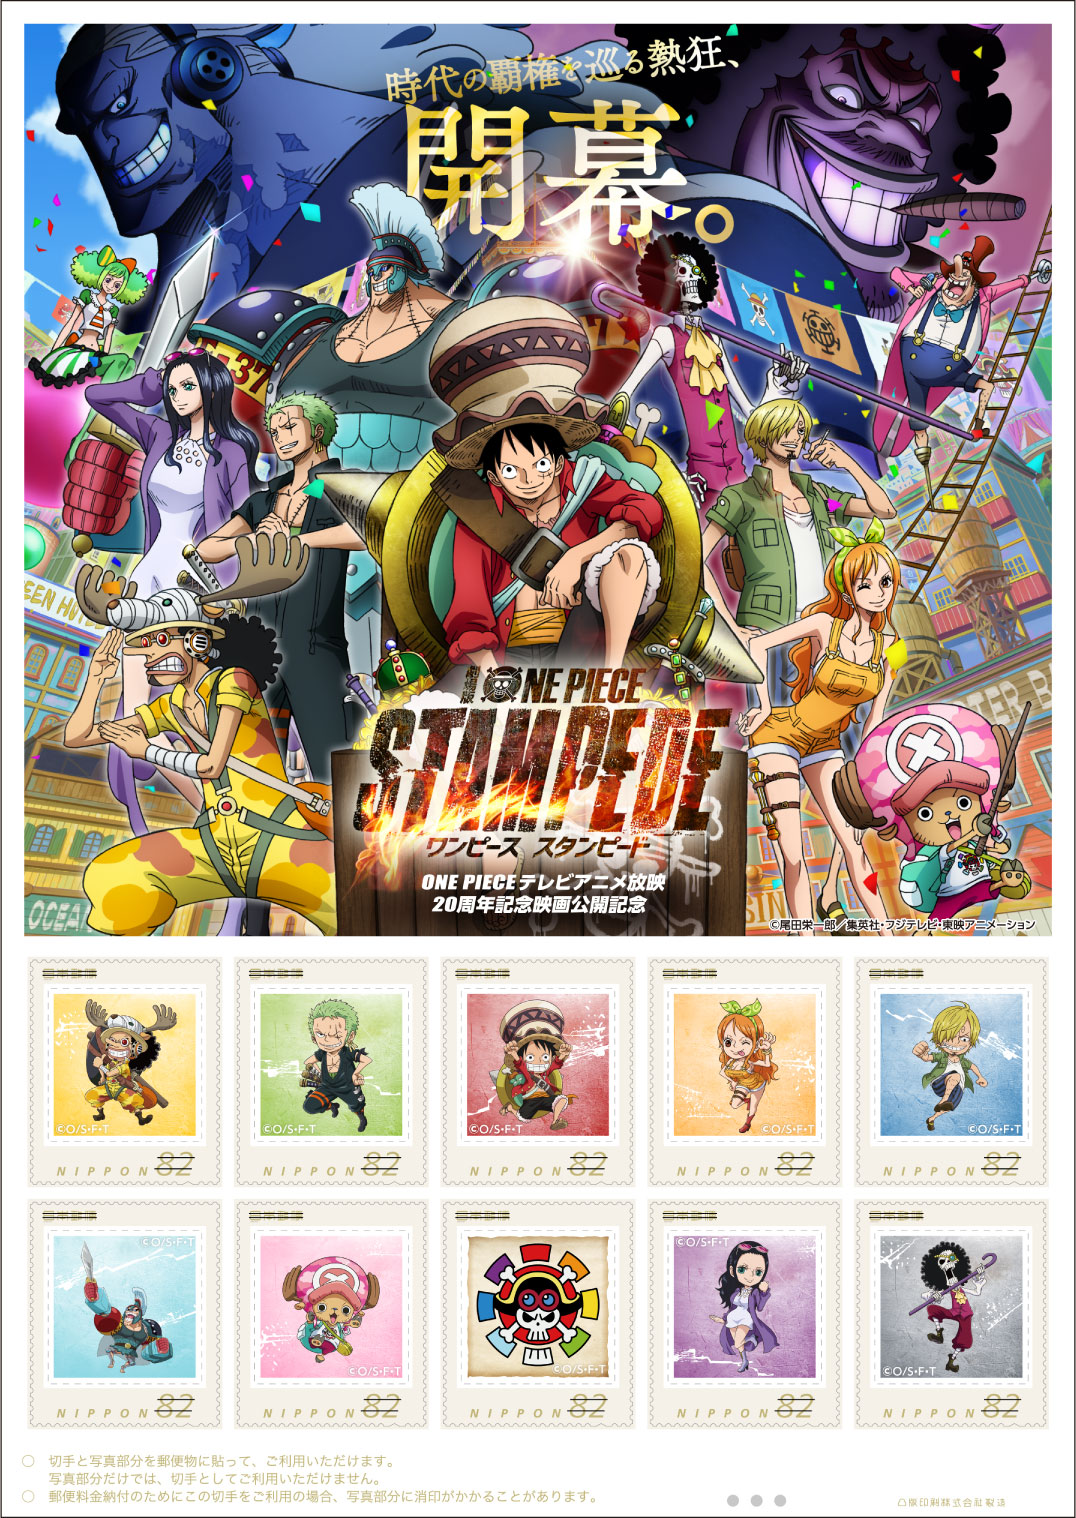 オリジナル フレーム切手セット One Pieceテレビアニメ放映周年記念映画 One Piece Stampede 公開記念 の販売開始 日本郵便